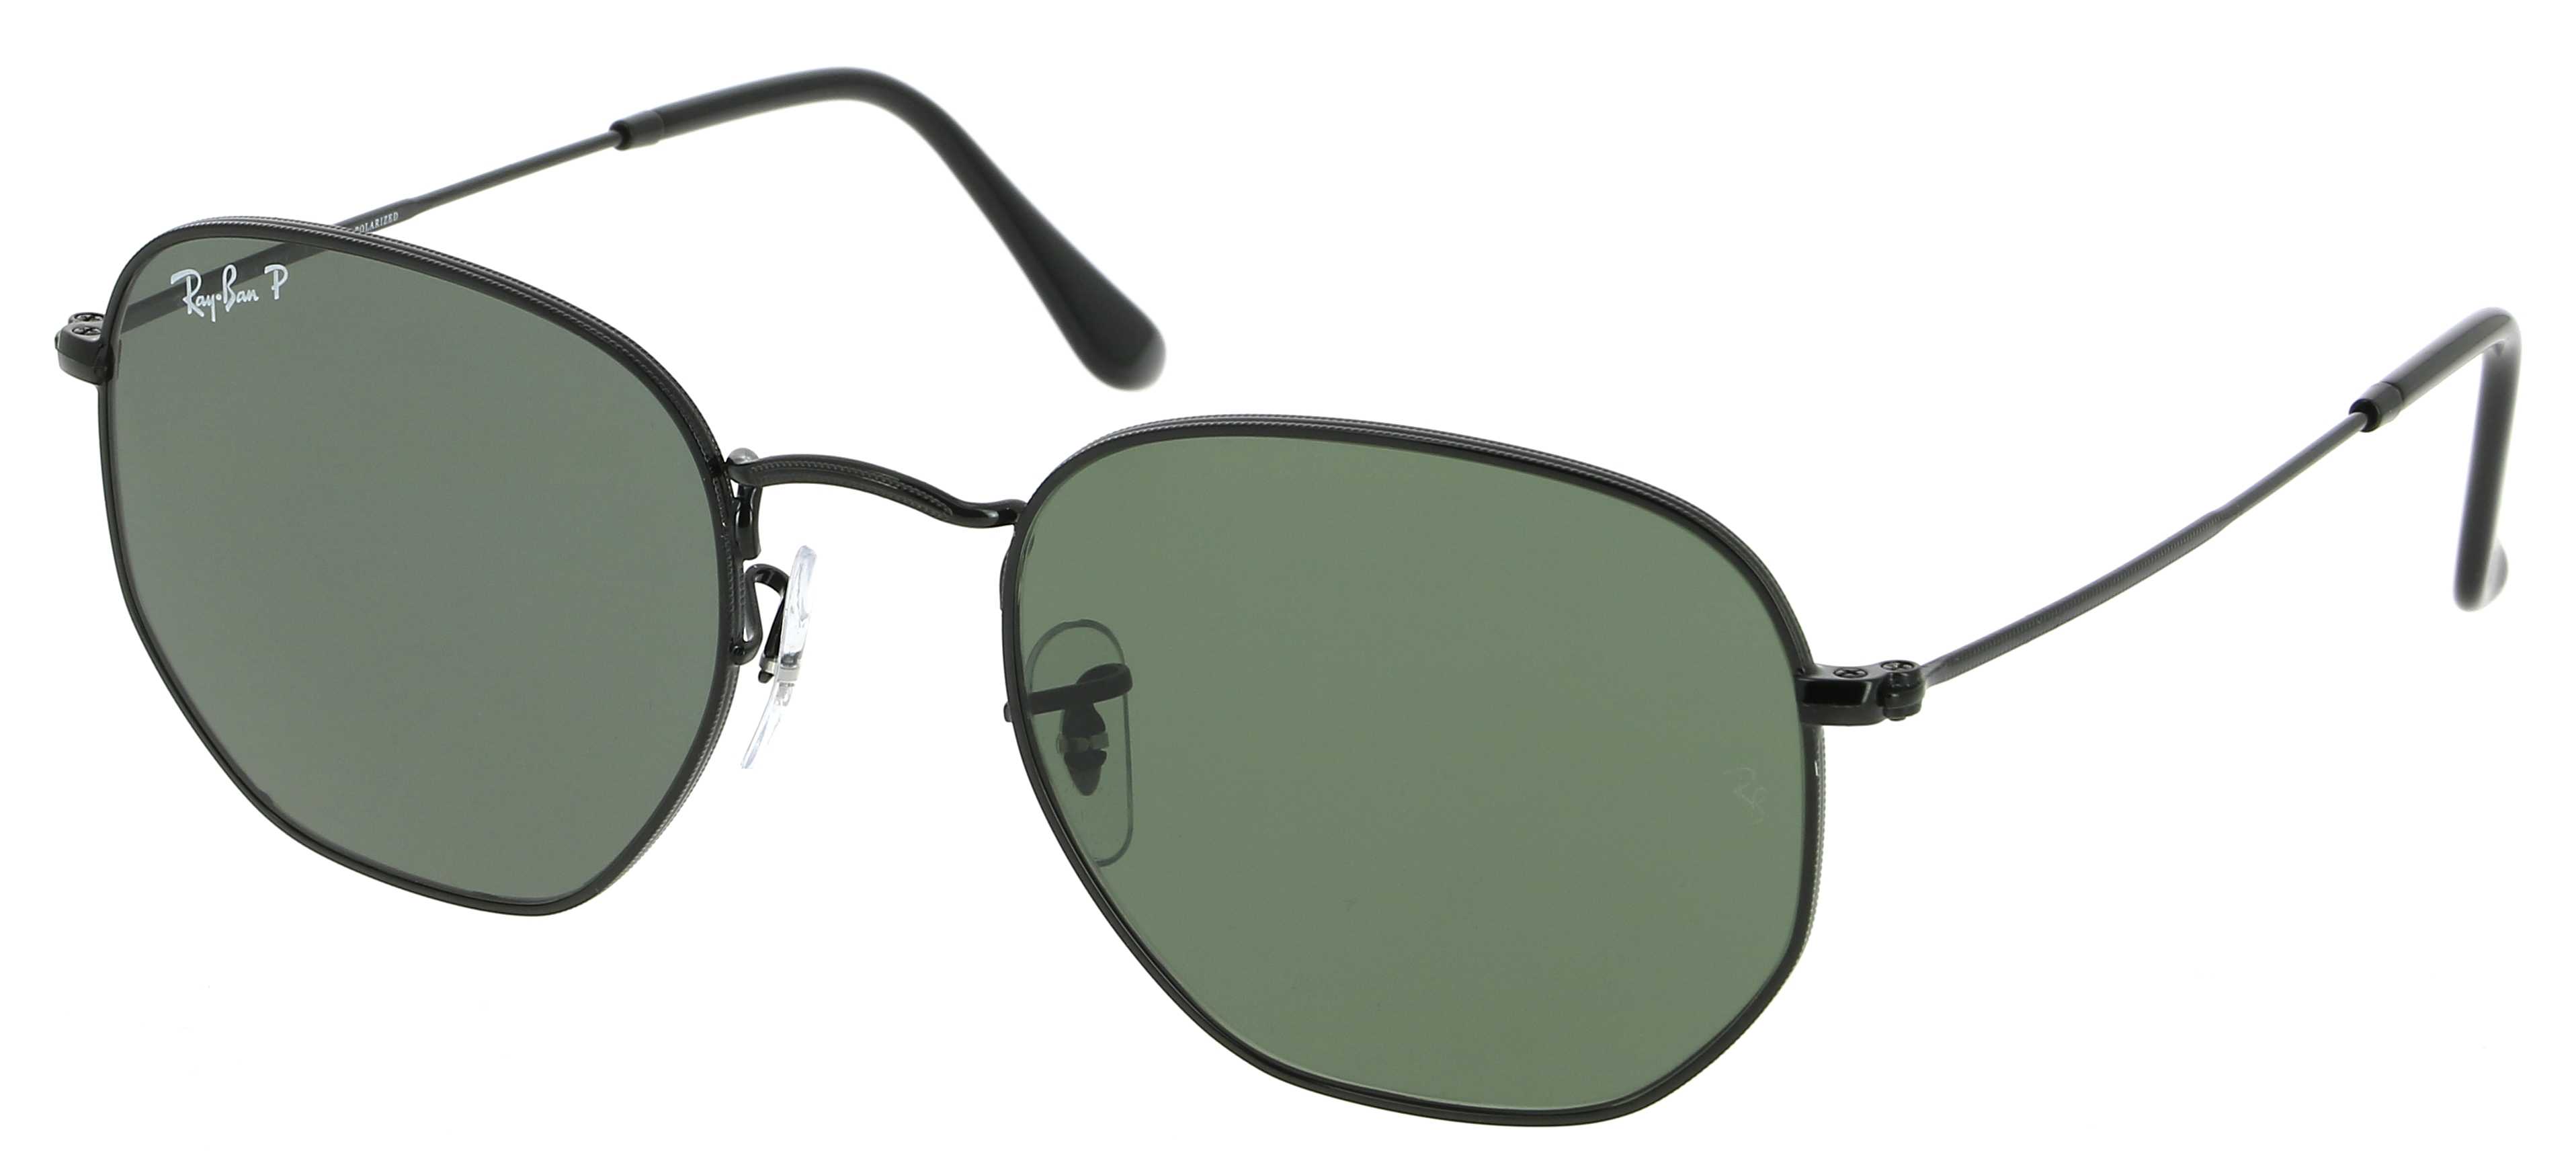 Sunglasses RAY-BAN RB 3548N 002/58 Hexagonal Flat Lenses 51/21 Unisex noir  Hexagonal Full Frame Glasses trendy 51mmx21mm 169$CA